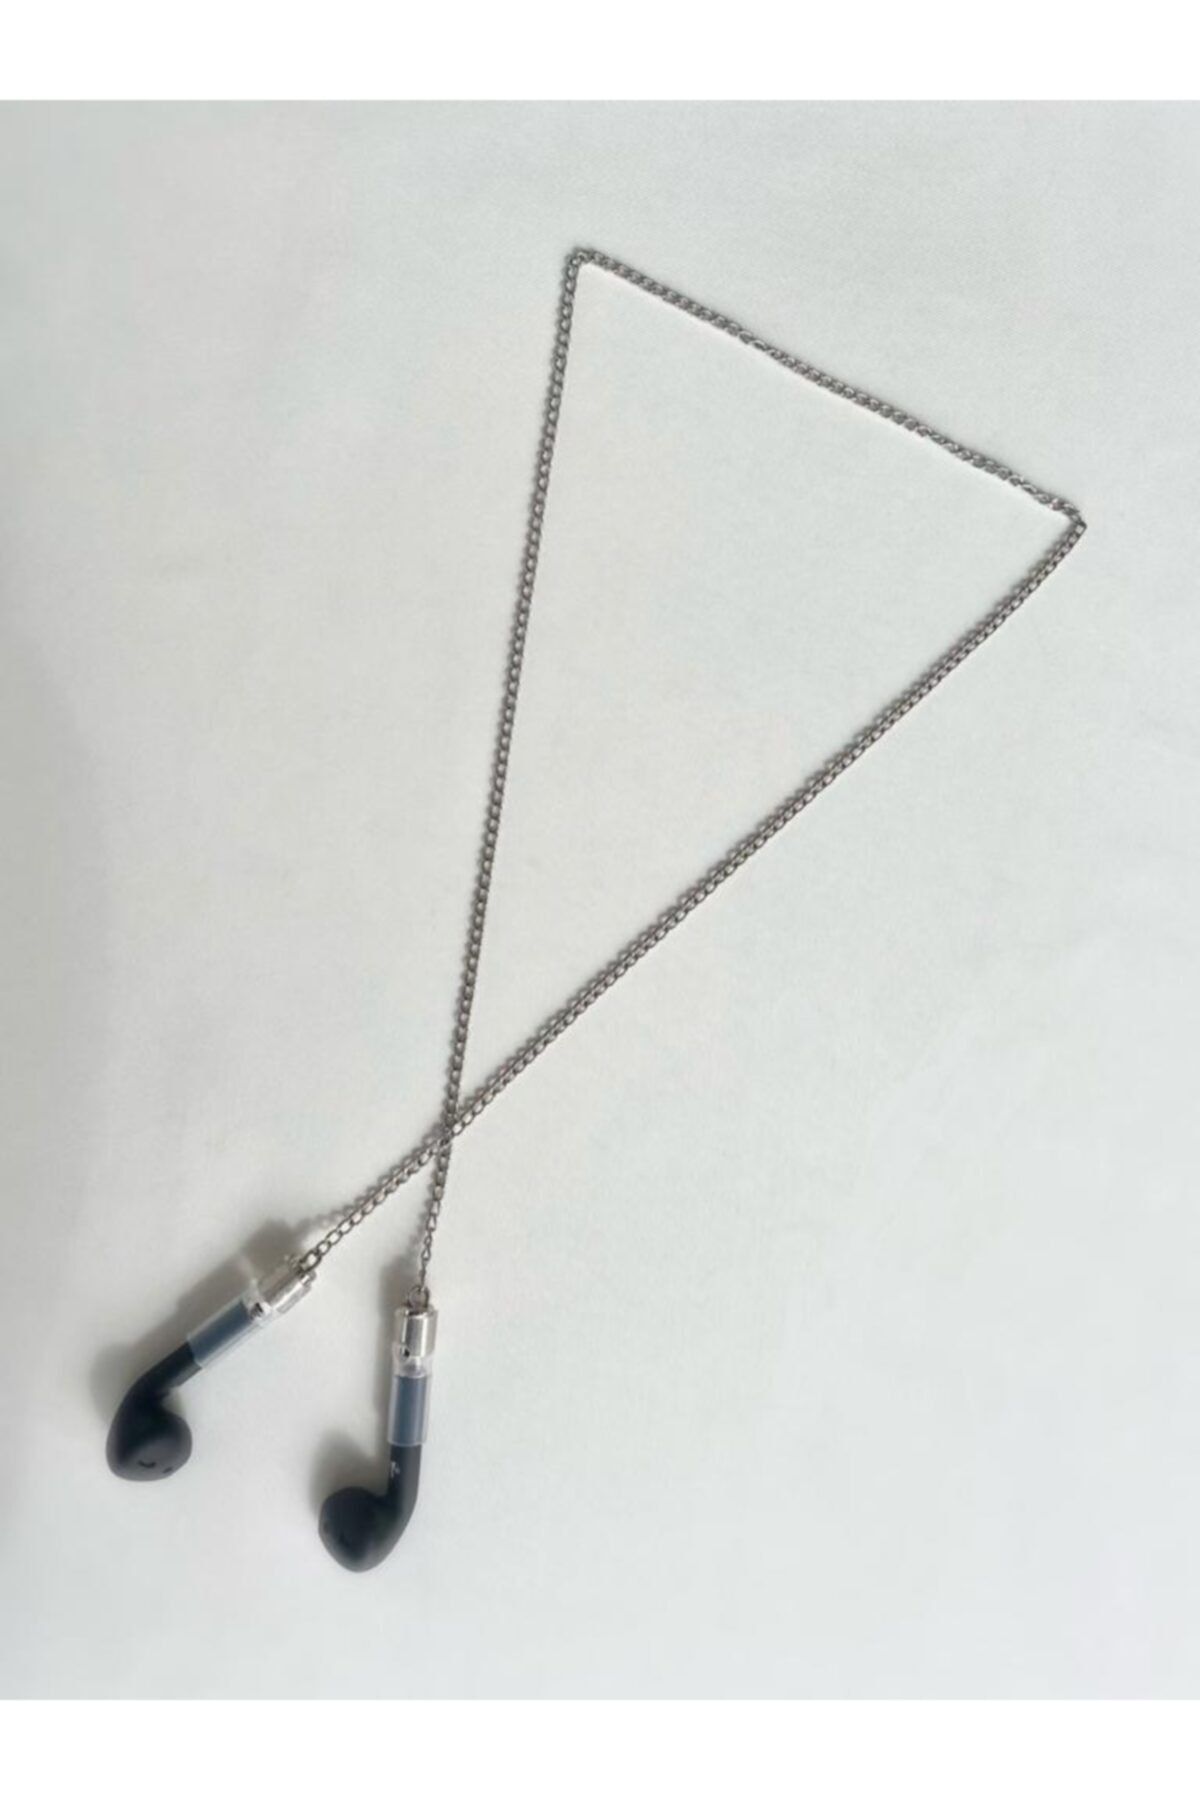 BK Design Kablosuz Kulaklık Airpods Boyun Askısı Zinciri Gümüş Kaplama